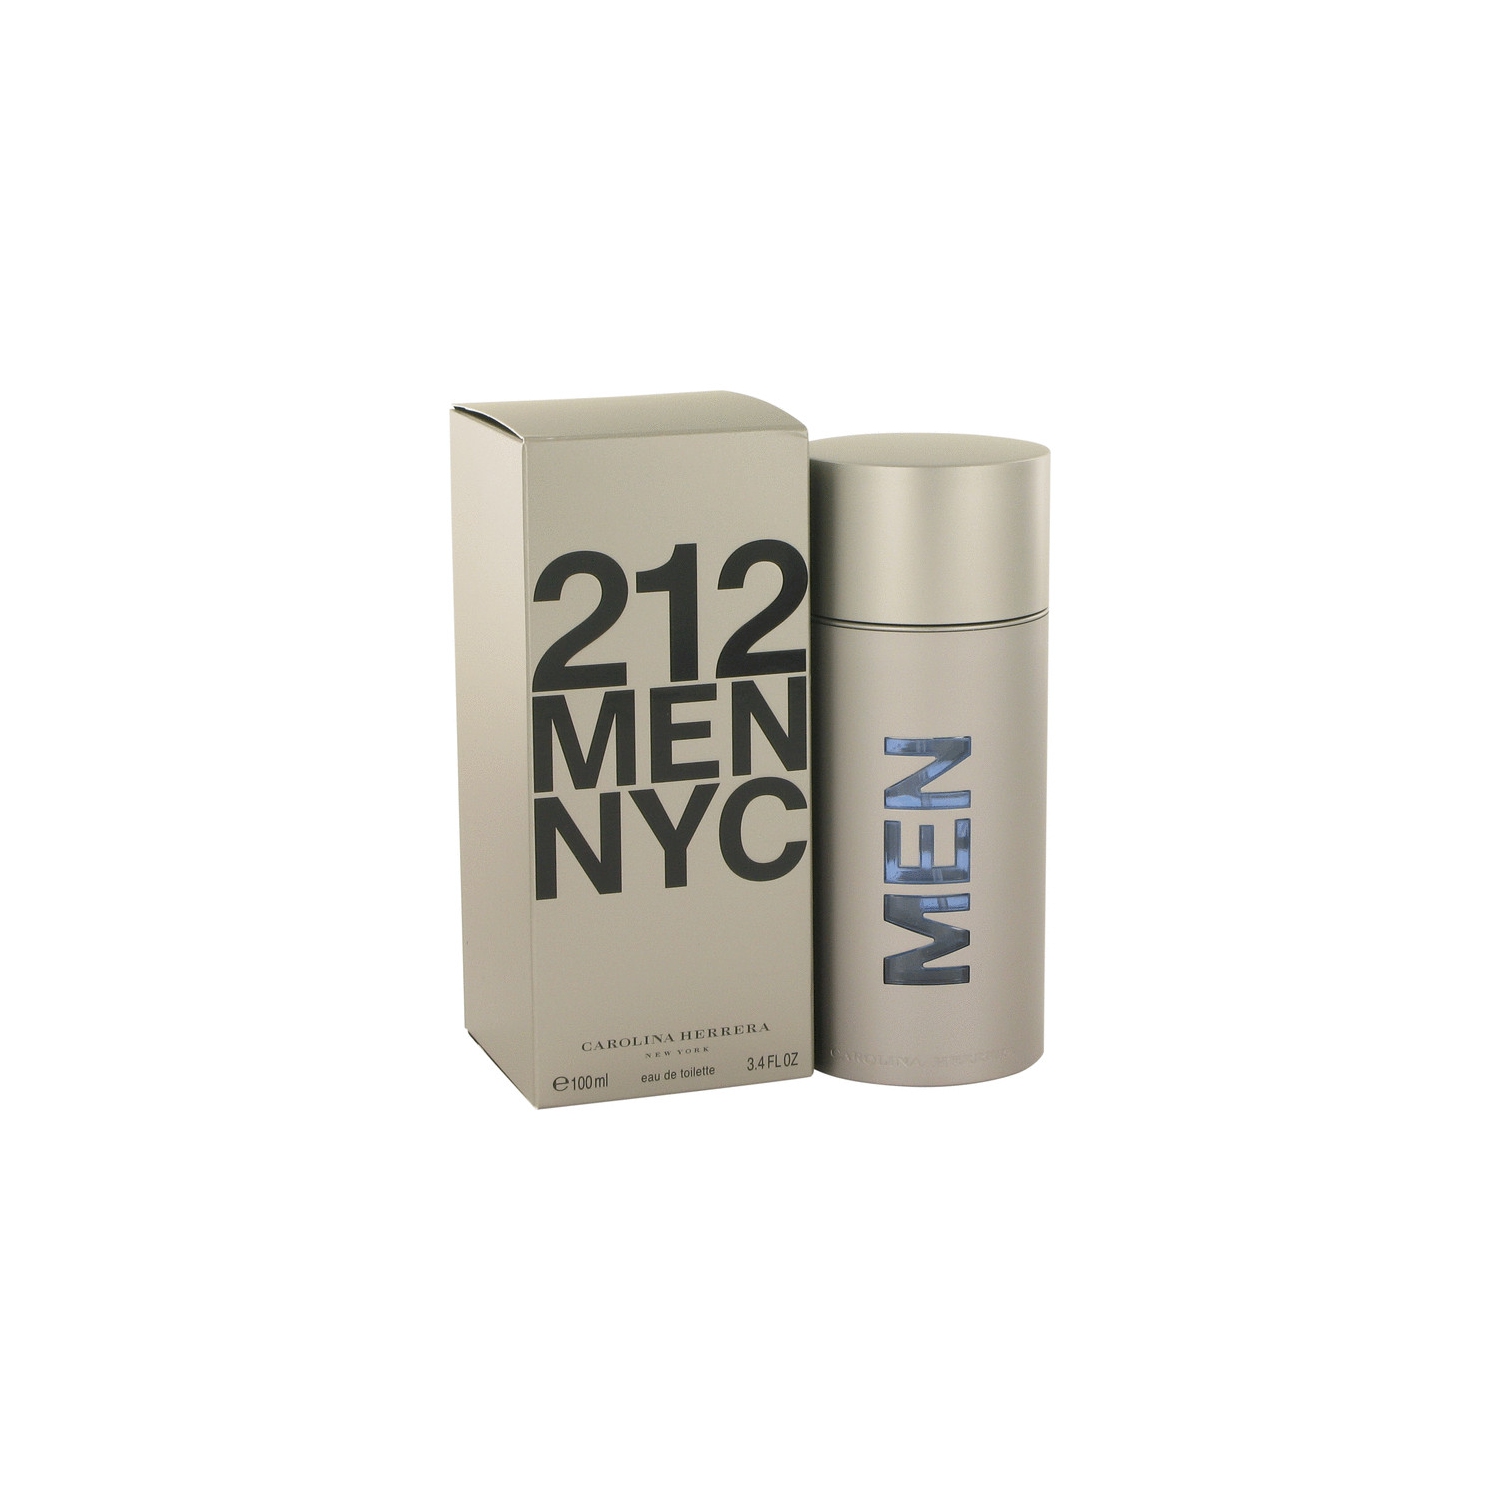 212 Men NYC by Carolina Herrera for Men EDT Cologne Spray 3.4 oz. New in Box